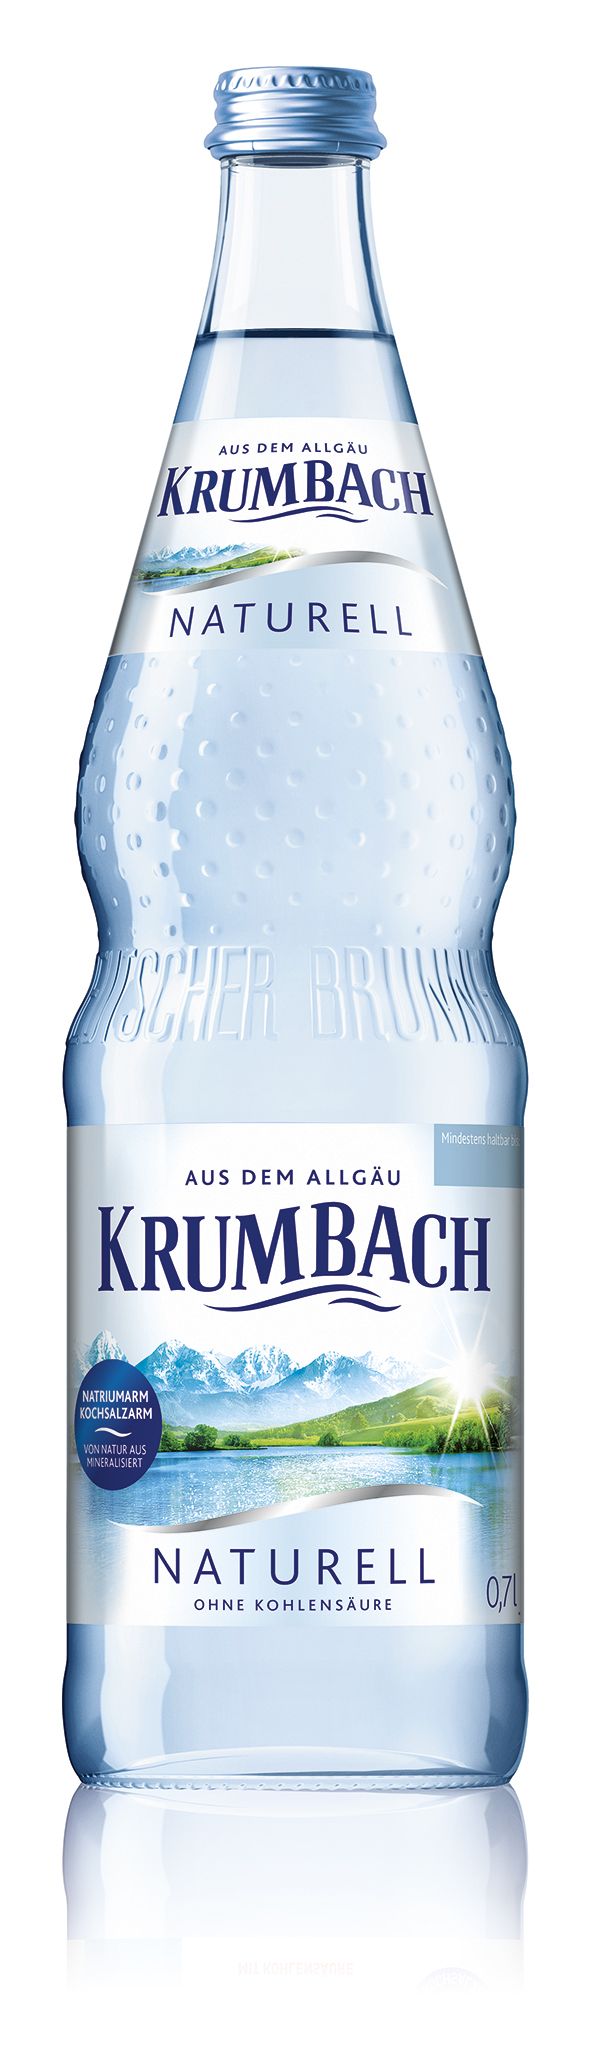 Krumbach Naturell